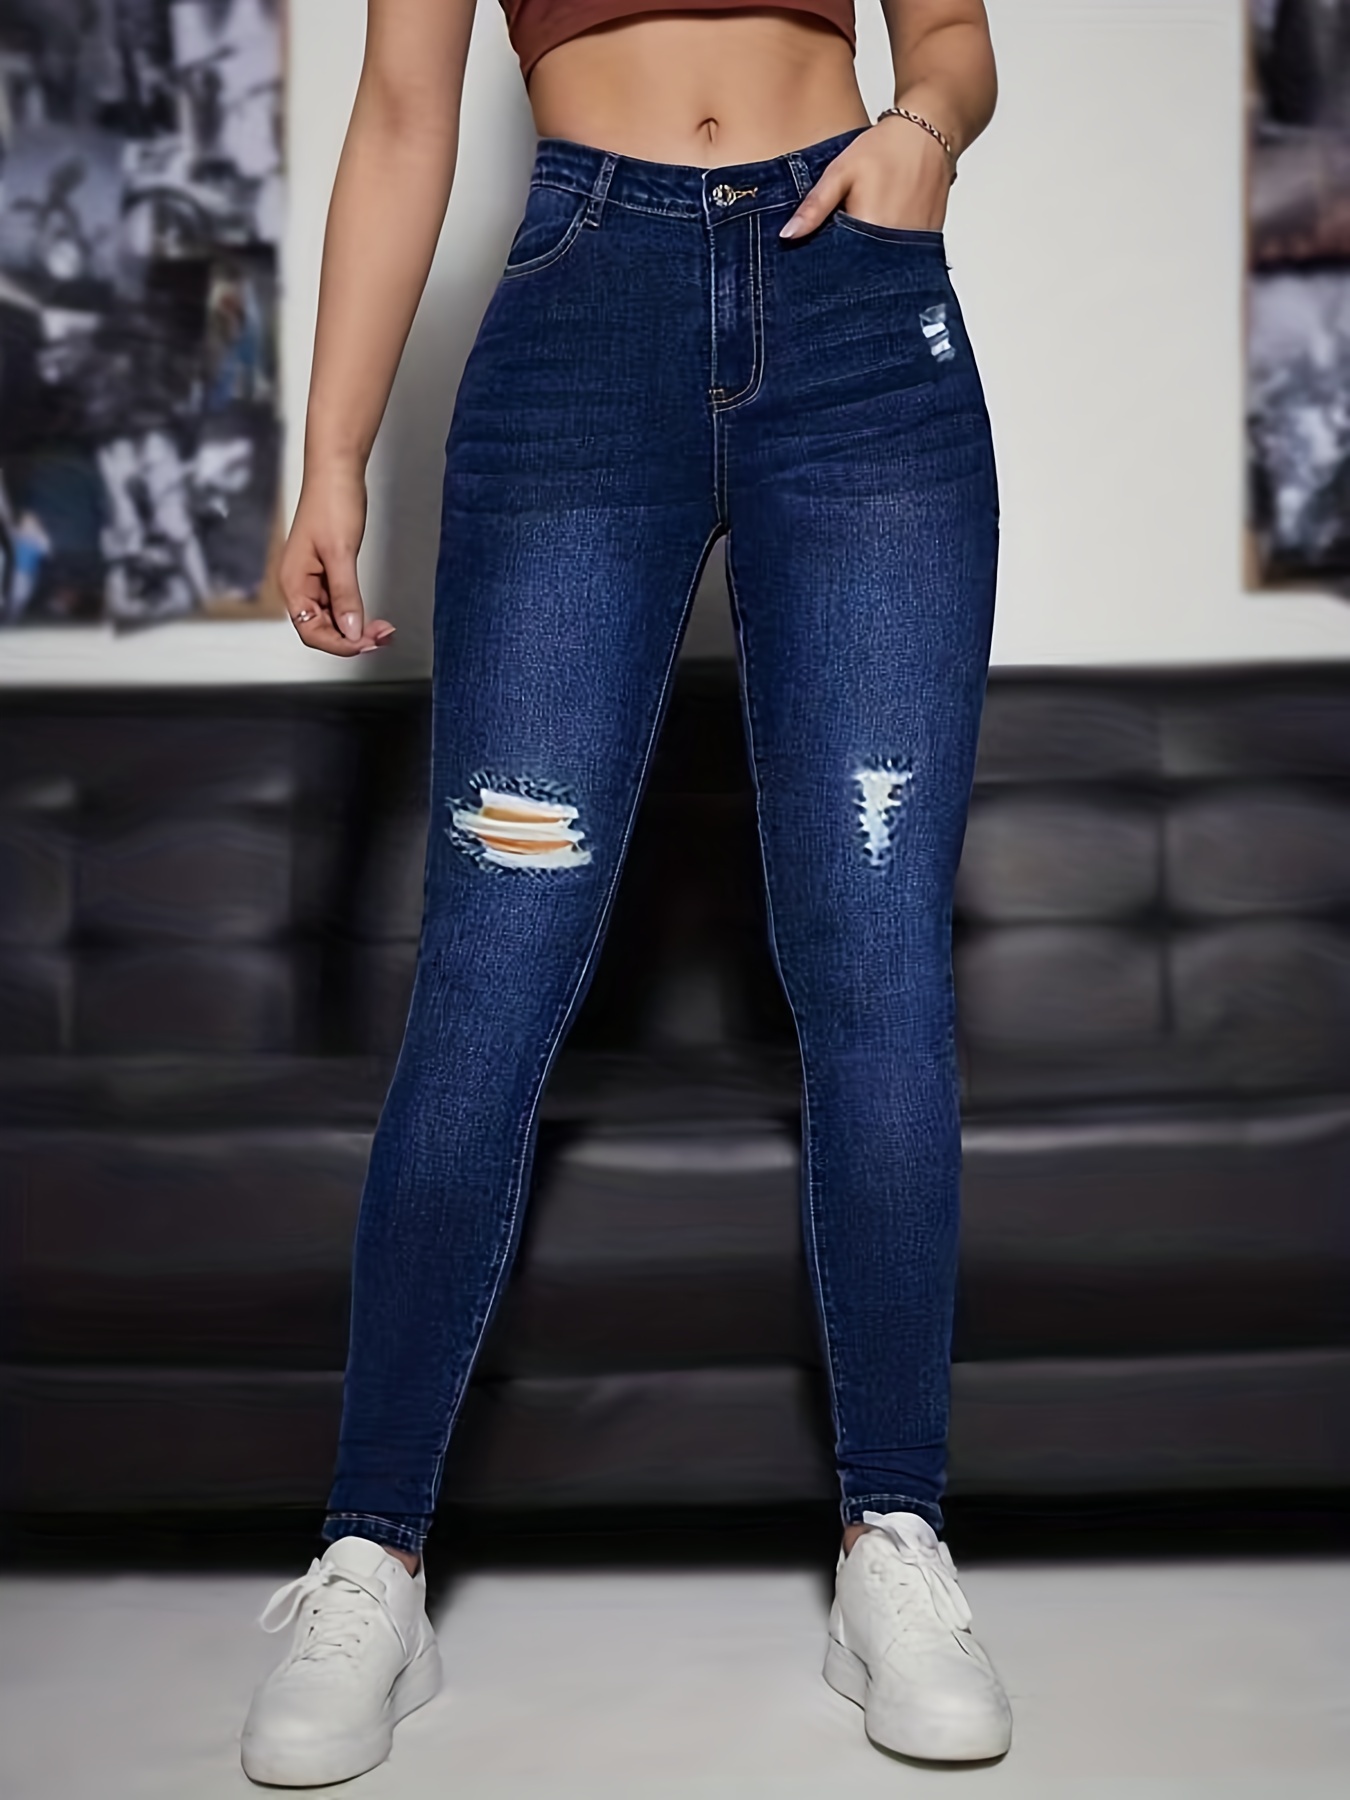 Calça Jeans Skinny Com Cintura Alta E Ondulação Em Relevo, Calça Jeans  Justa E Elástica De Cintura Alta, Jeans E Roupas Femininas, Compre As  Últimas Tendências